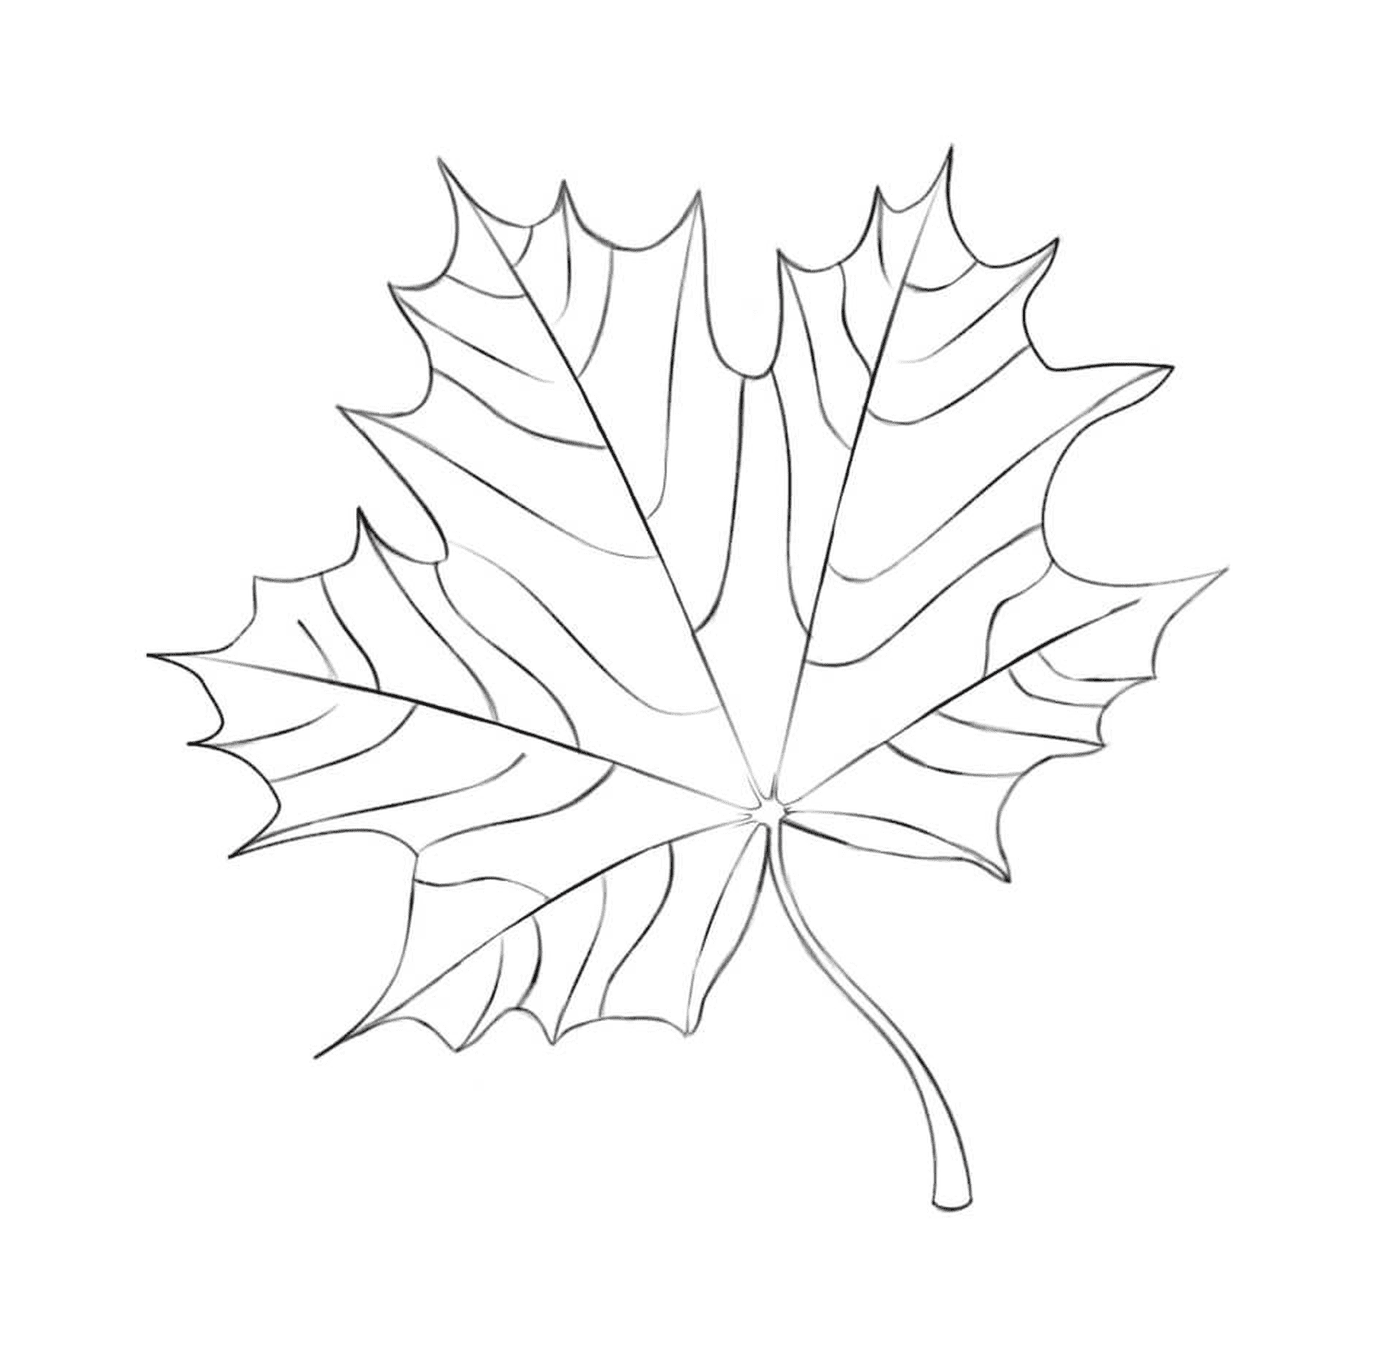  Нарисованный кленовый лист 